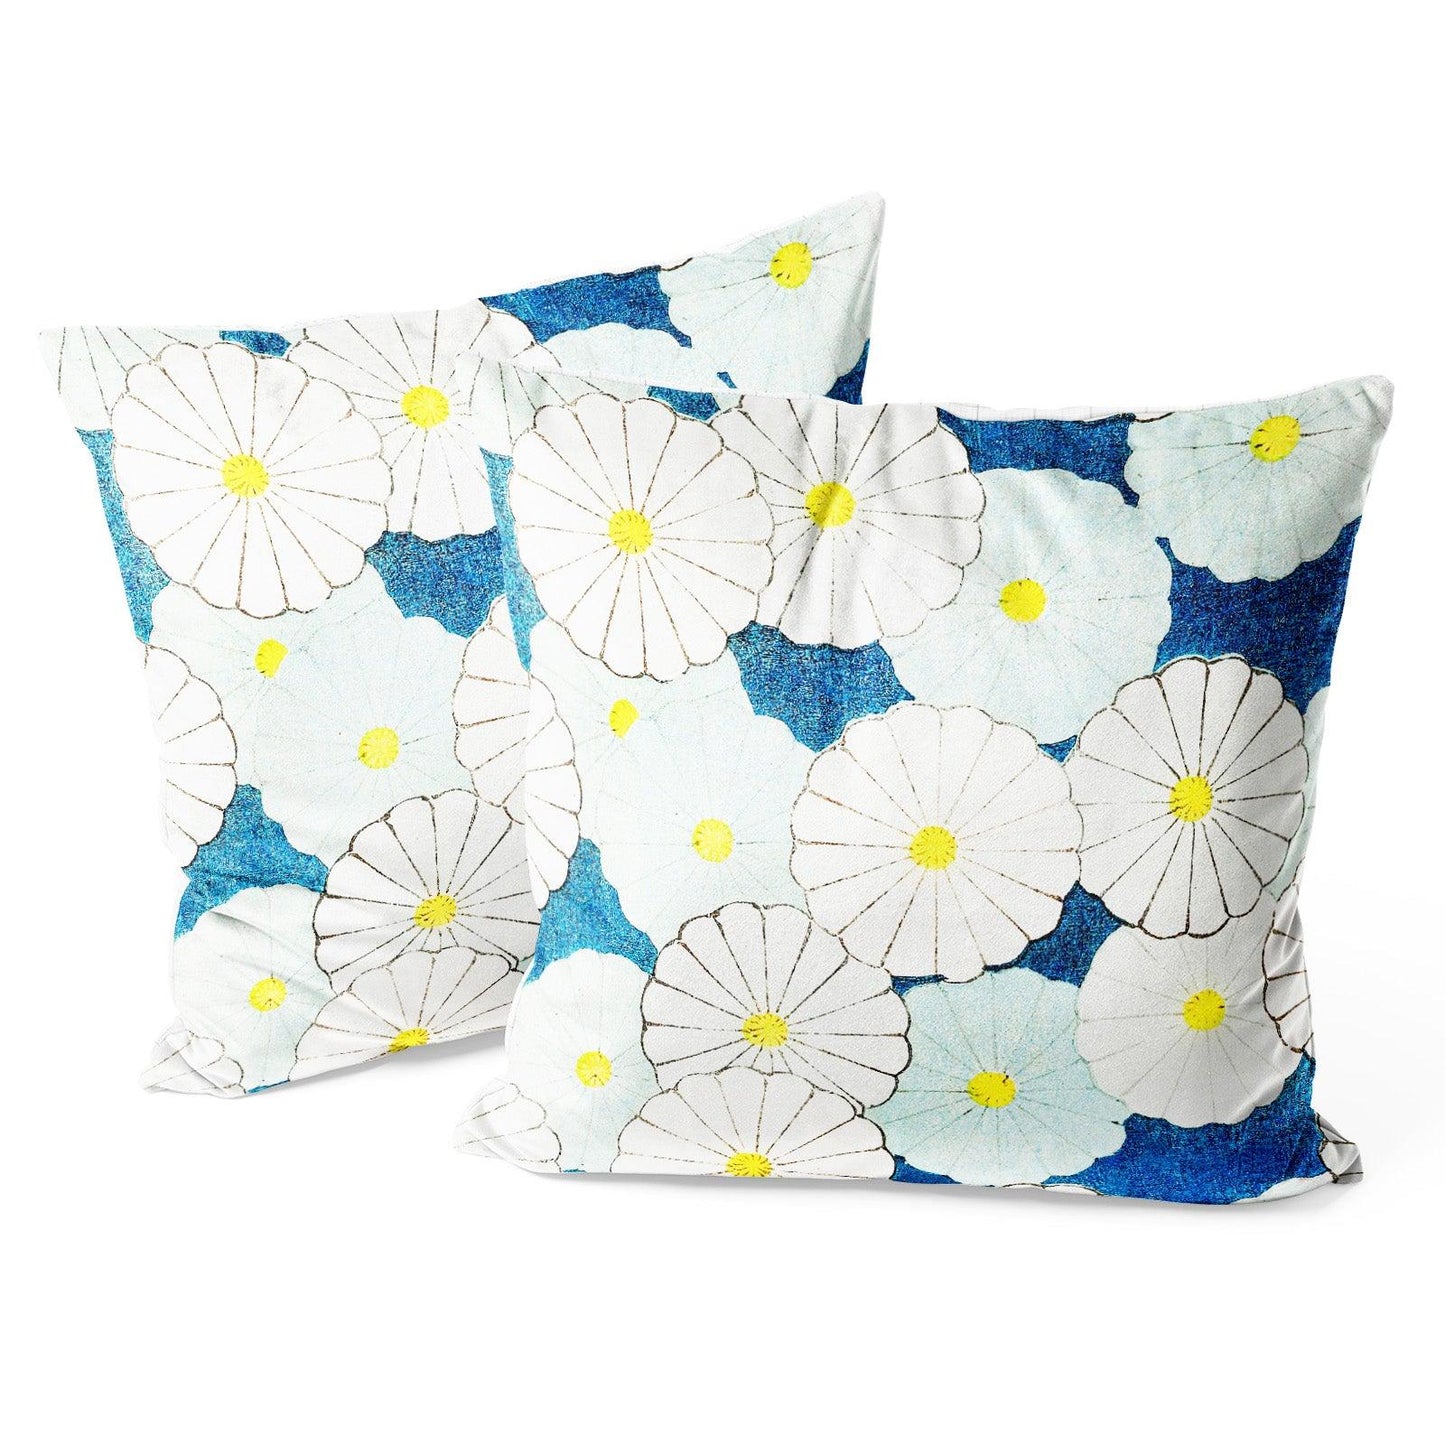 https://www.berkinarts.com/cdn/shop/files/art-flower-throw-pillow-covers-pack-of-2-18x18-inch-blue-chrysanthemum-by-korin-furuya-berkin-arts.jpg?v=1688965081&width=1445